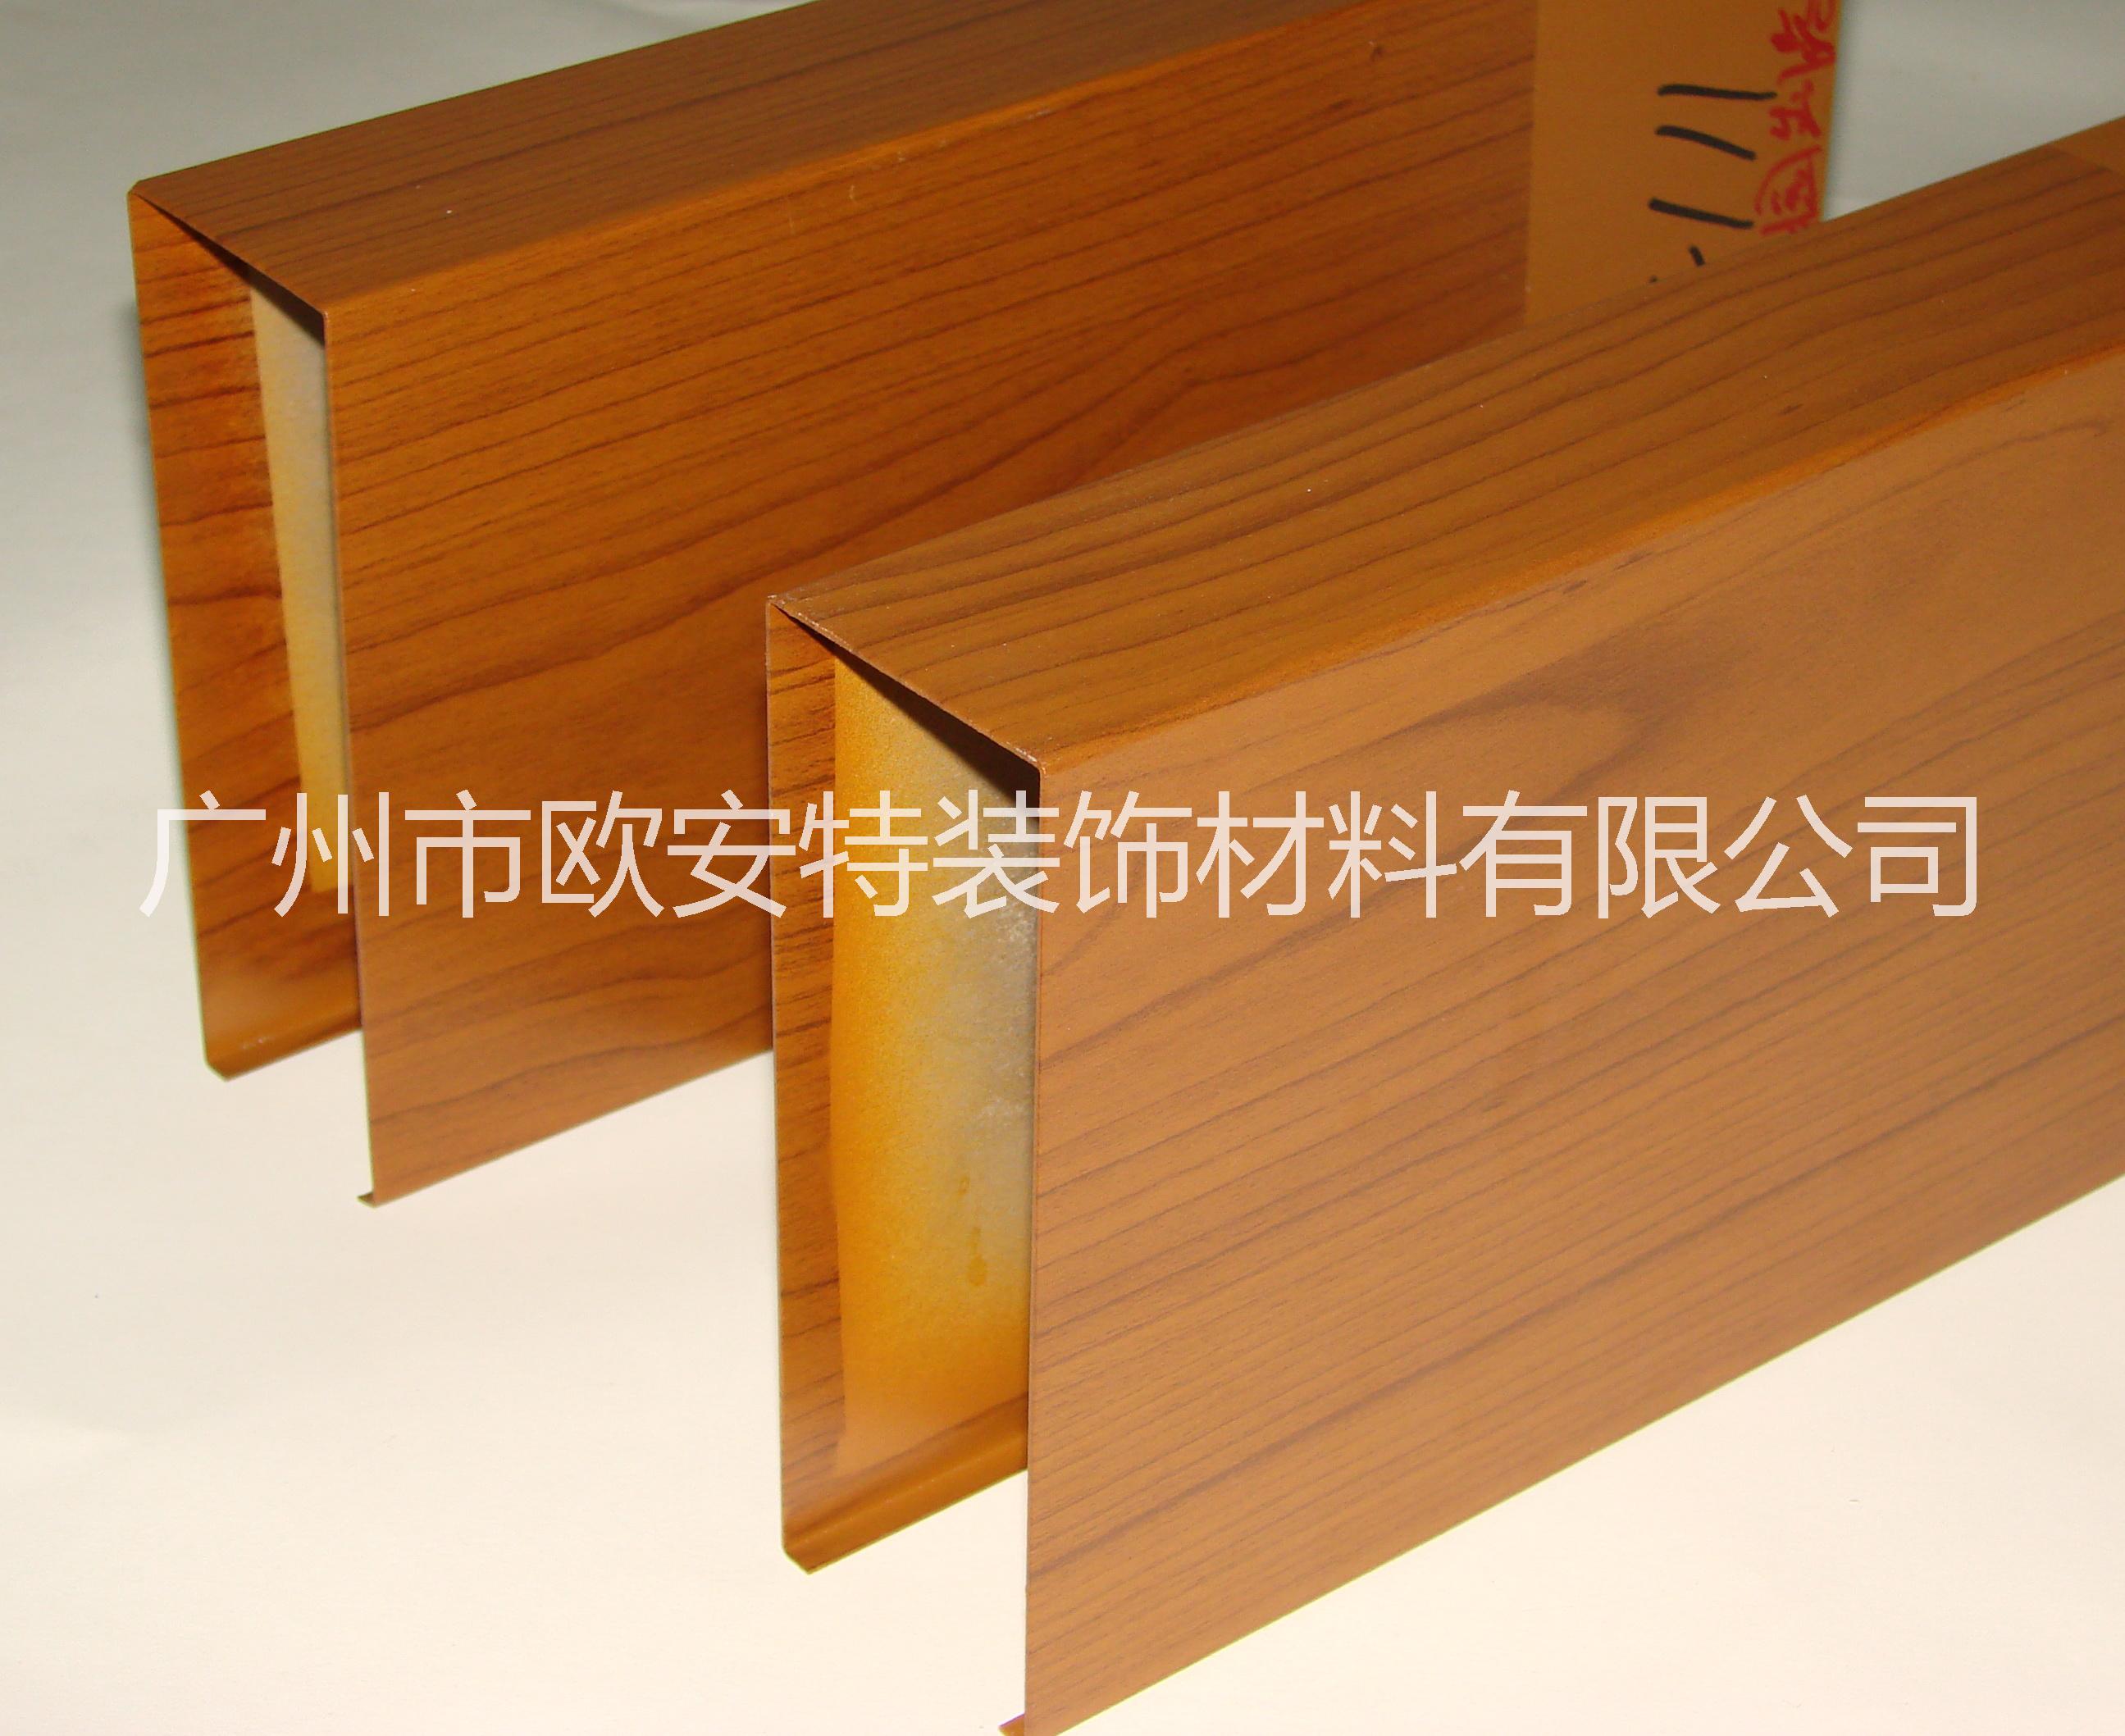 广州市木纹铝方通厂家木纹铝方通 热转印木纹铝方通 木纹铝方通生产厂家